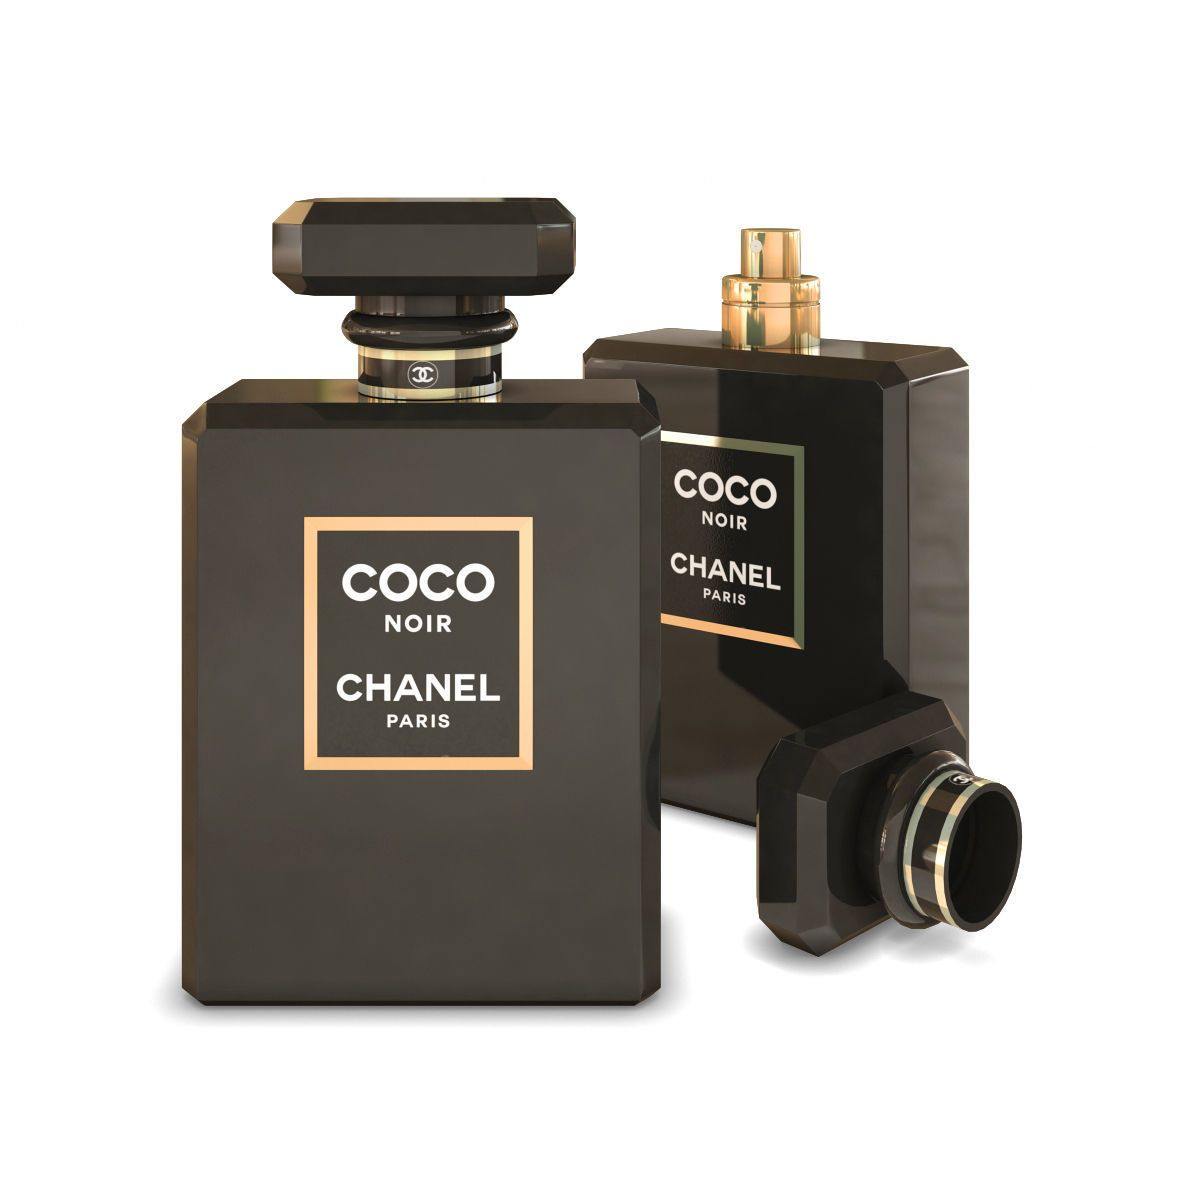 Chanel Perfumes Elde olanlar: Coco Chanel Noir🖤 Coco Chanel